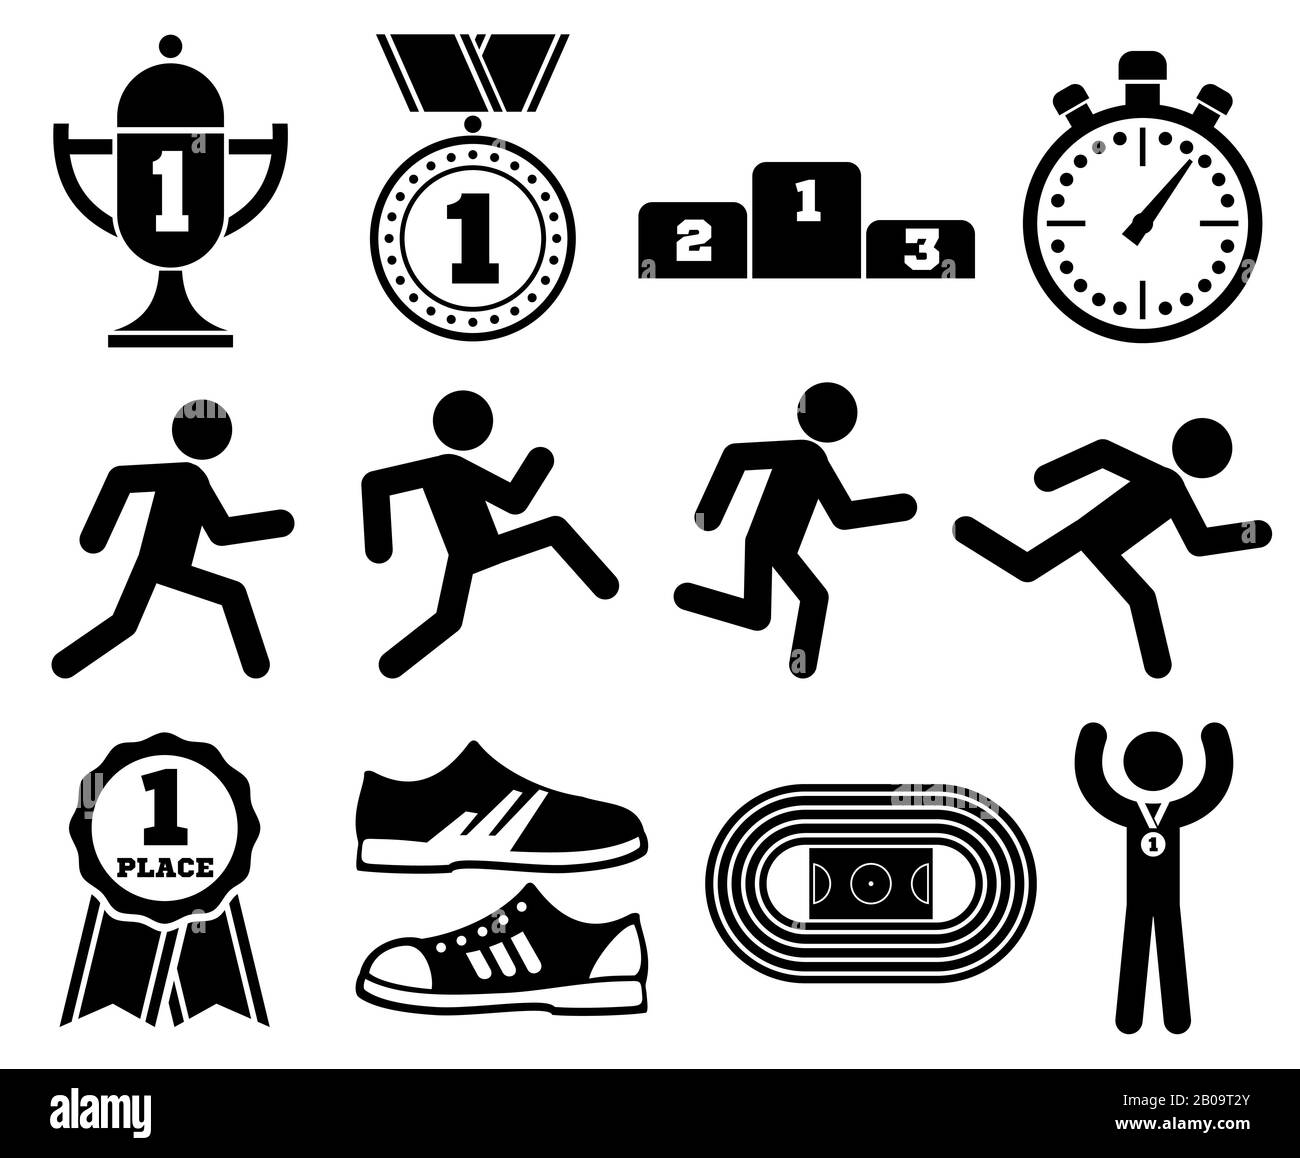 Laufsport, Joggingpersonen im Freien, Vektorsymbole für Marathonrennen. Aktiver Wettkampf, Abbildung der Laufübung Stock Vektor